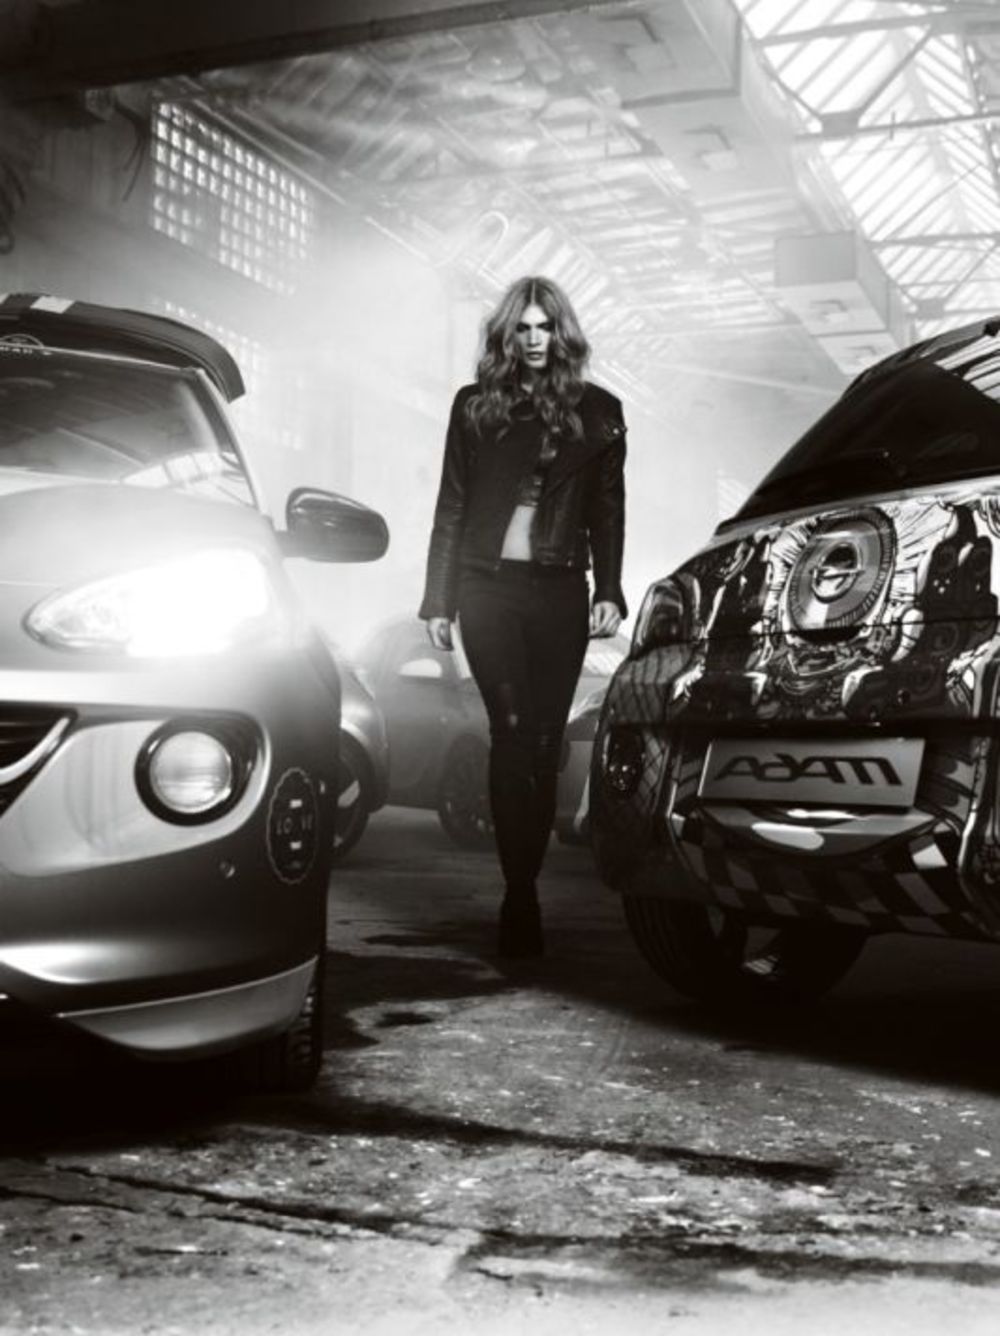 Opel ADAM će biti predstavljen na novi način, ni manje ni više nego od strane međunarodne superzvezde. Kanadski kompozitor i rok pevač nije samo izvanredan muzičar, već i ugledan fotograf. Ovaj umetnik u njegovom studiju u Berlinu fotografisao je šampiona indi